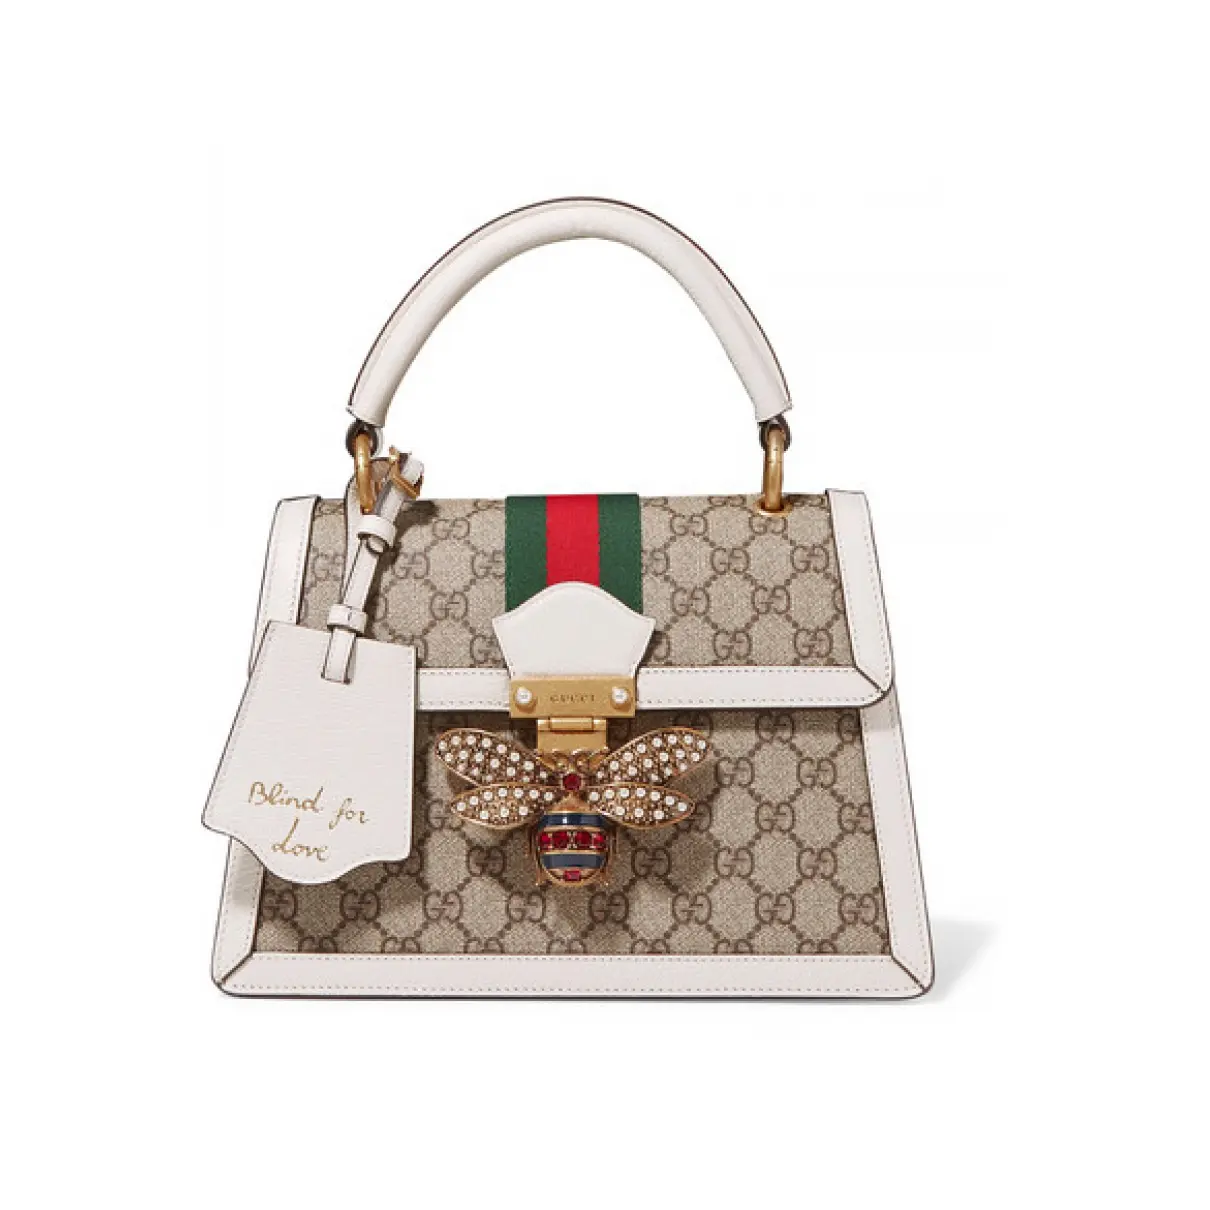 Buy Gucci Queen Margaret leather handbag online